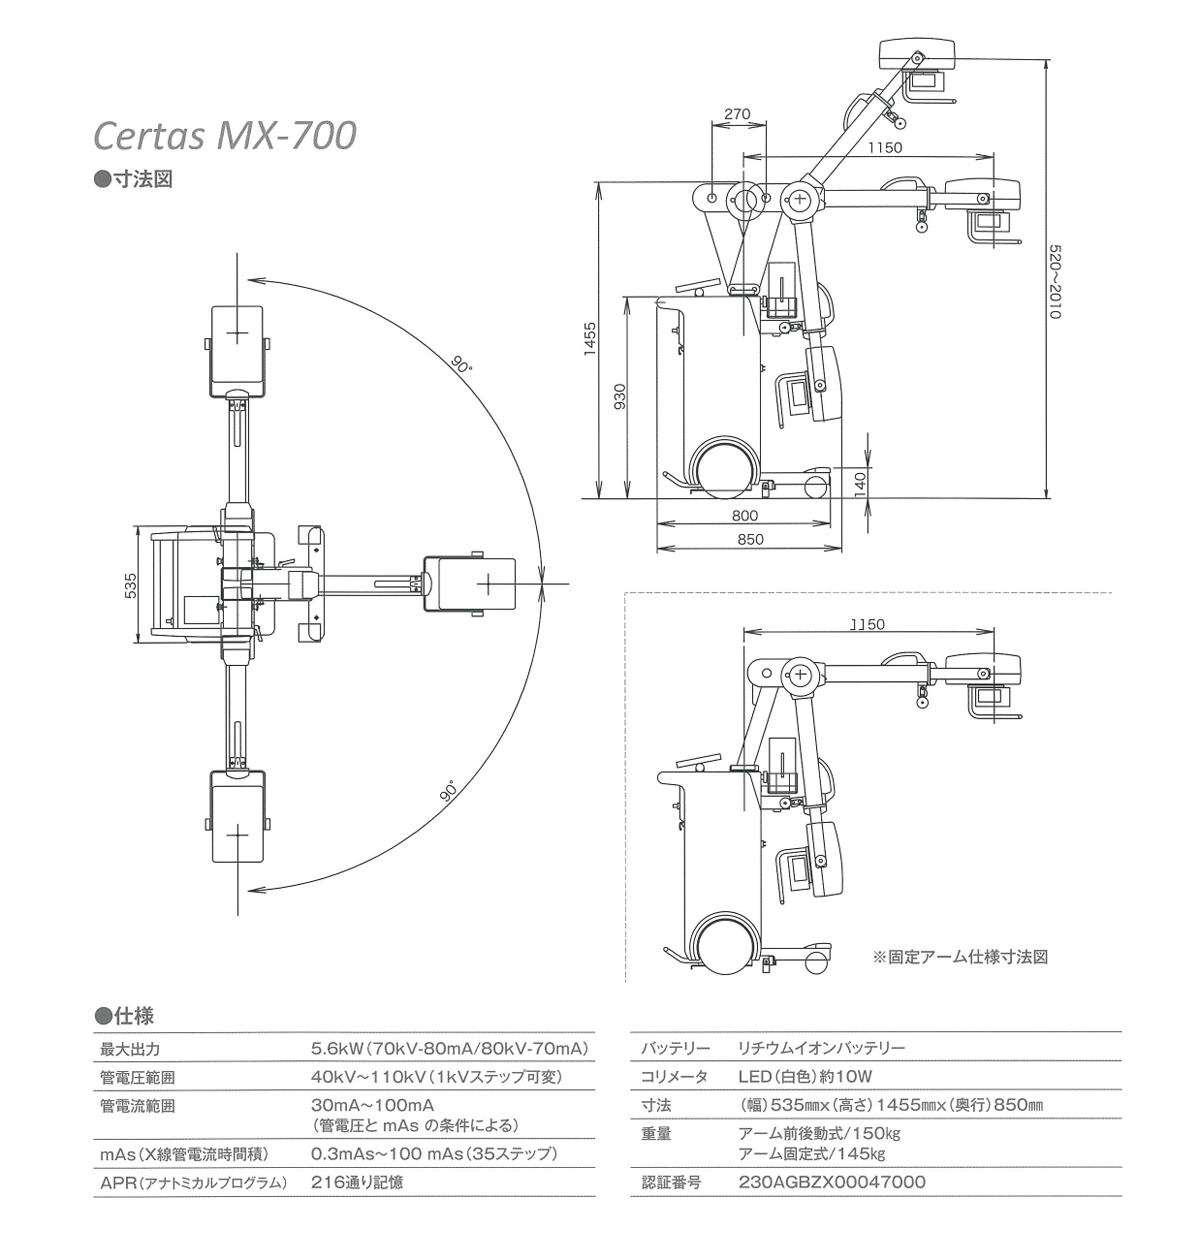 回診用X線撮影装置(Certas MX-700)の仕様、システム構成、寸法図